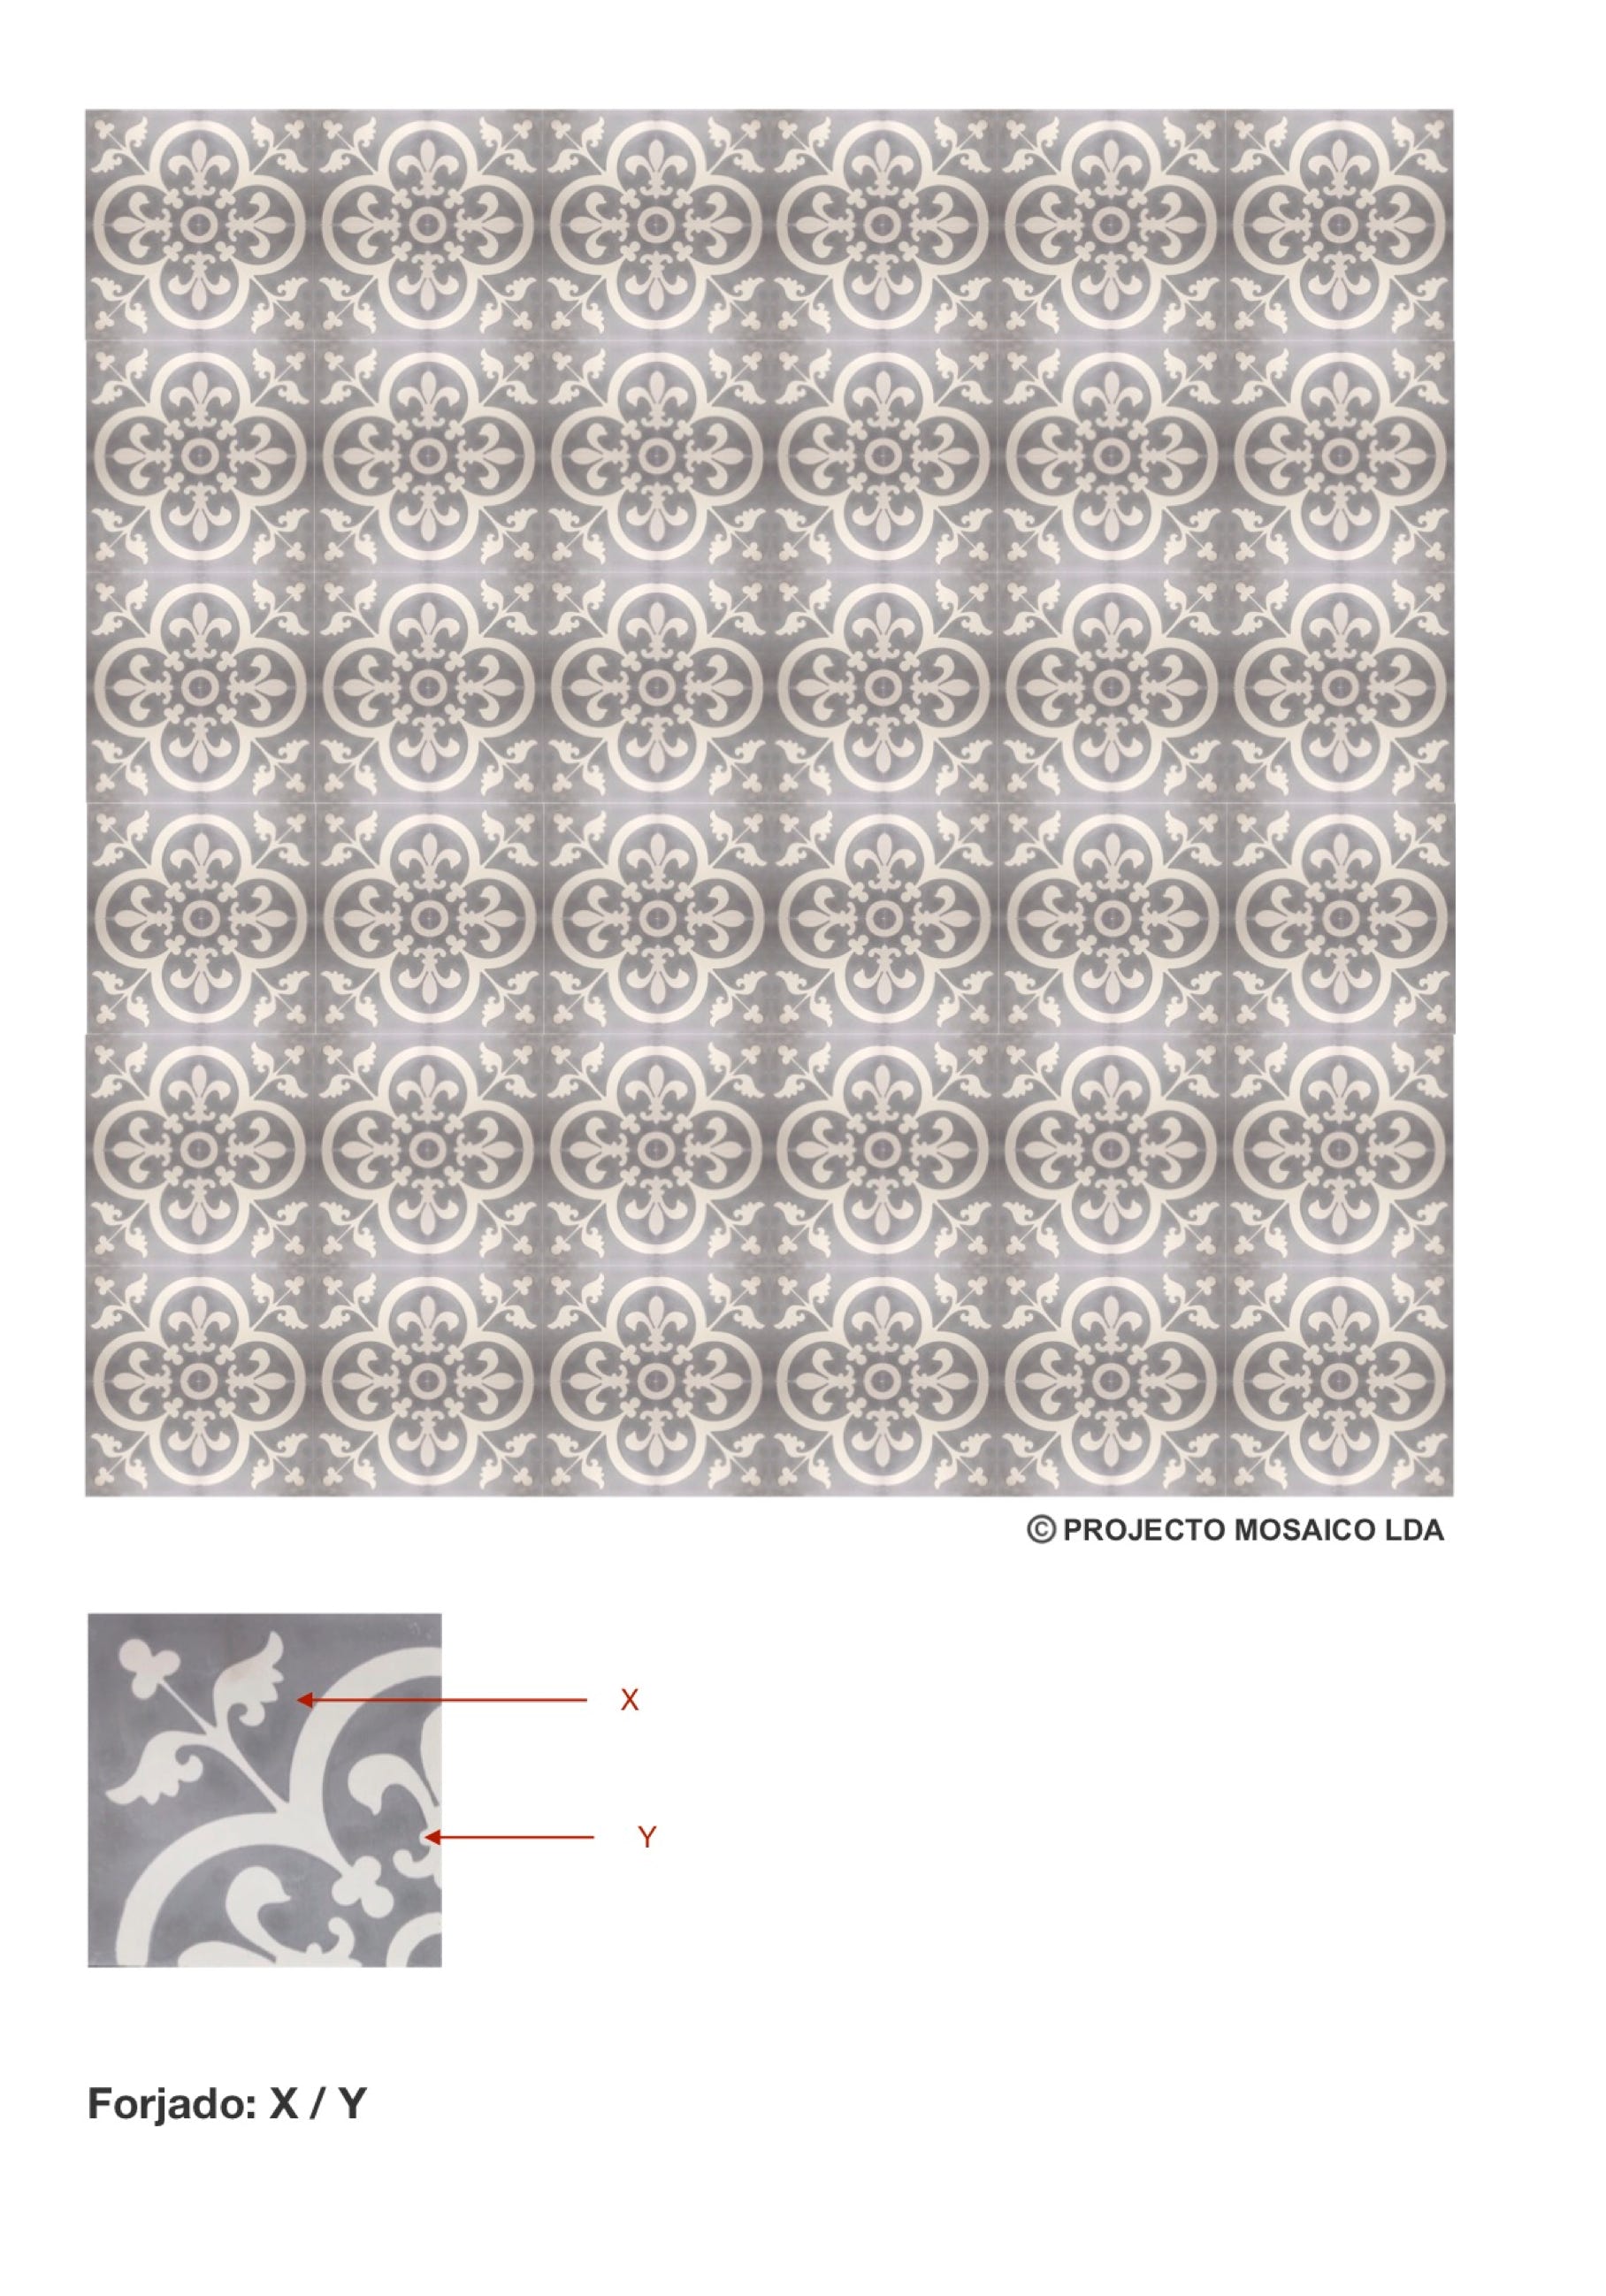 illustração de aplicação do mosaico hidráulico ref: Forjado